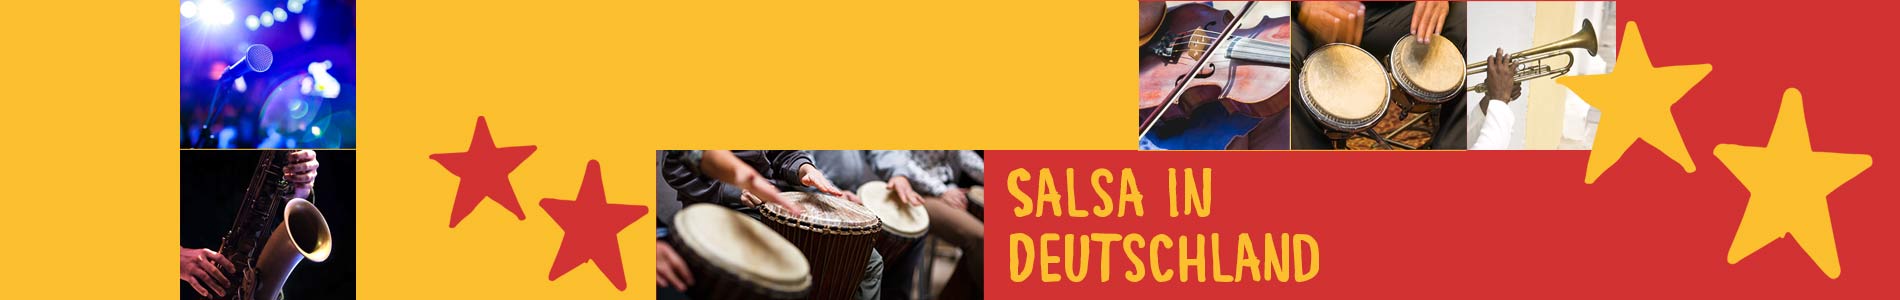 Salsa in Born – Salsa lernen und tanzen, Tanzkurse, Partys, Veranstaltungen